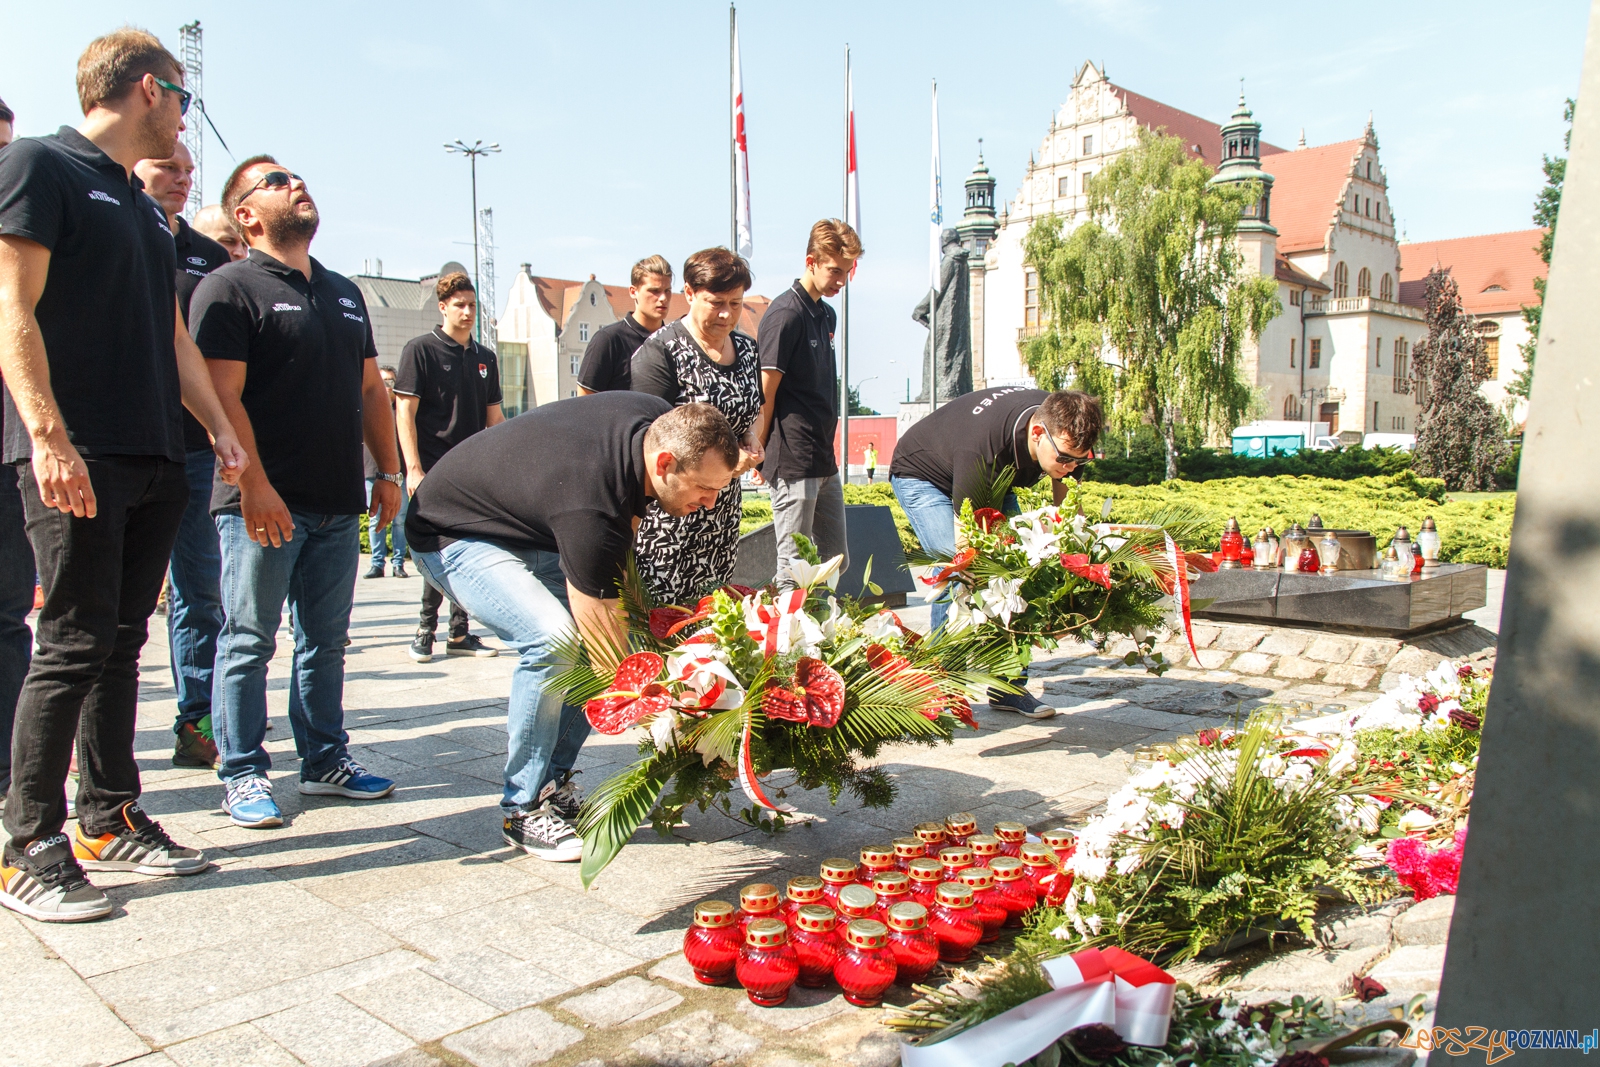 Waterpoliści składają kwiaty pod pomnikiem Czerwca 56 - Pozna  Foto: LepszyPOZNAN.pl / Paweł Rychter